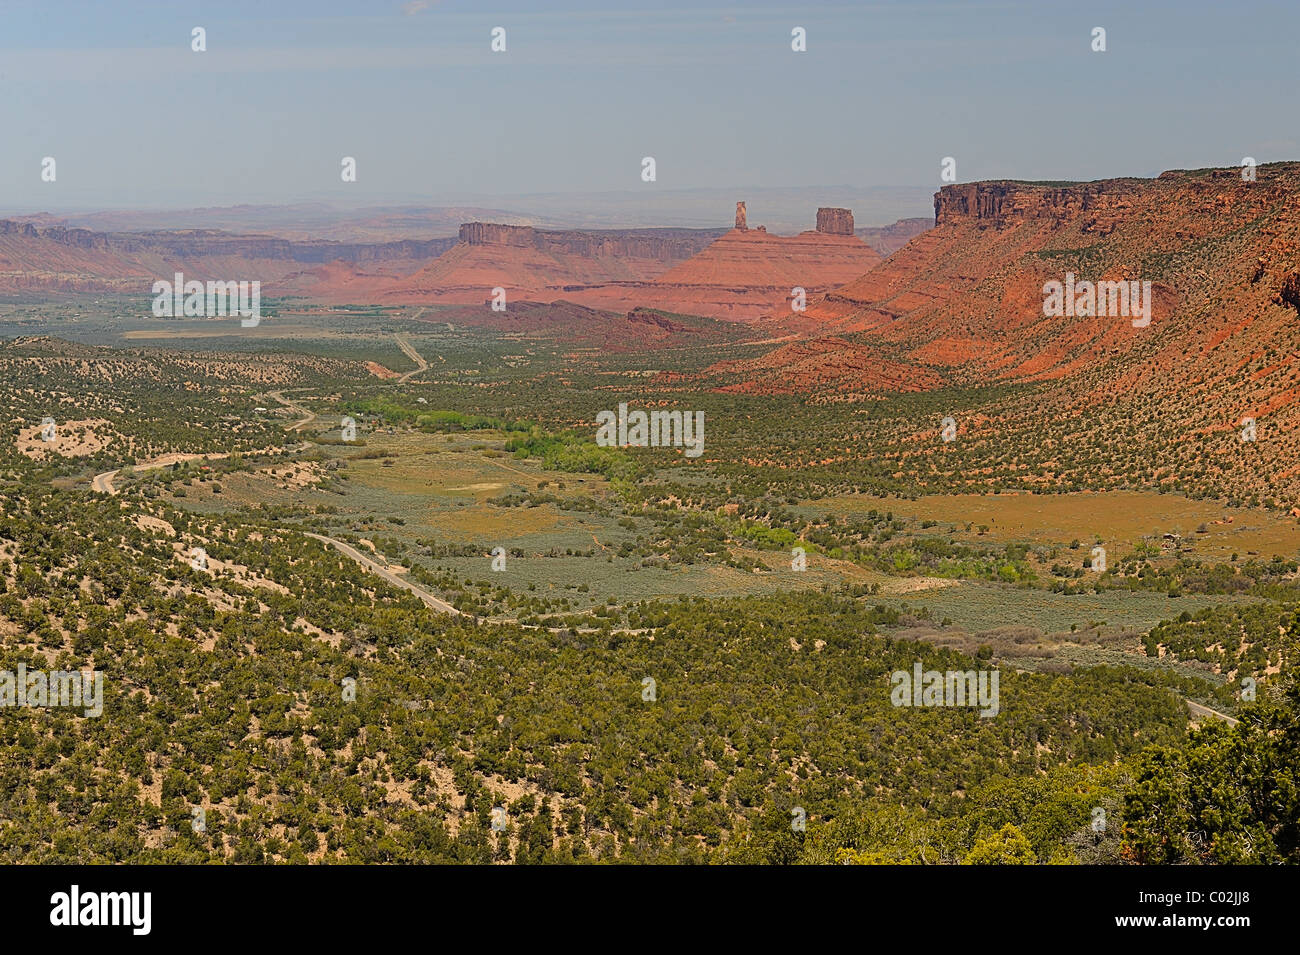 Château vallée près de Moab, États-Unis Banque D'Images